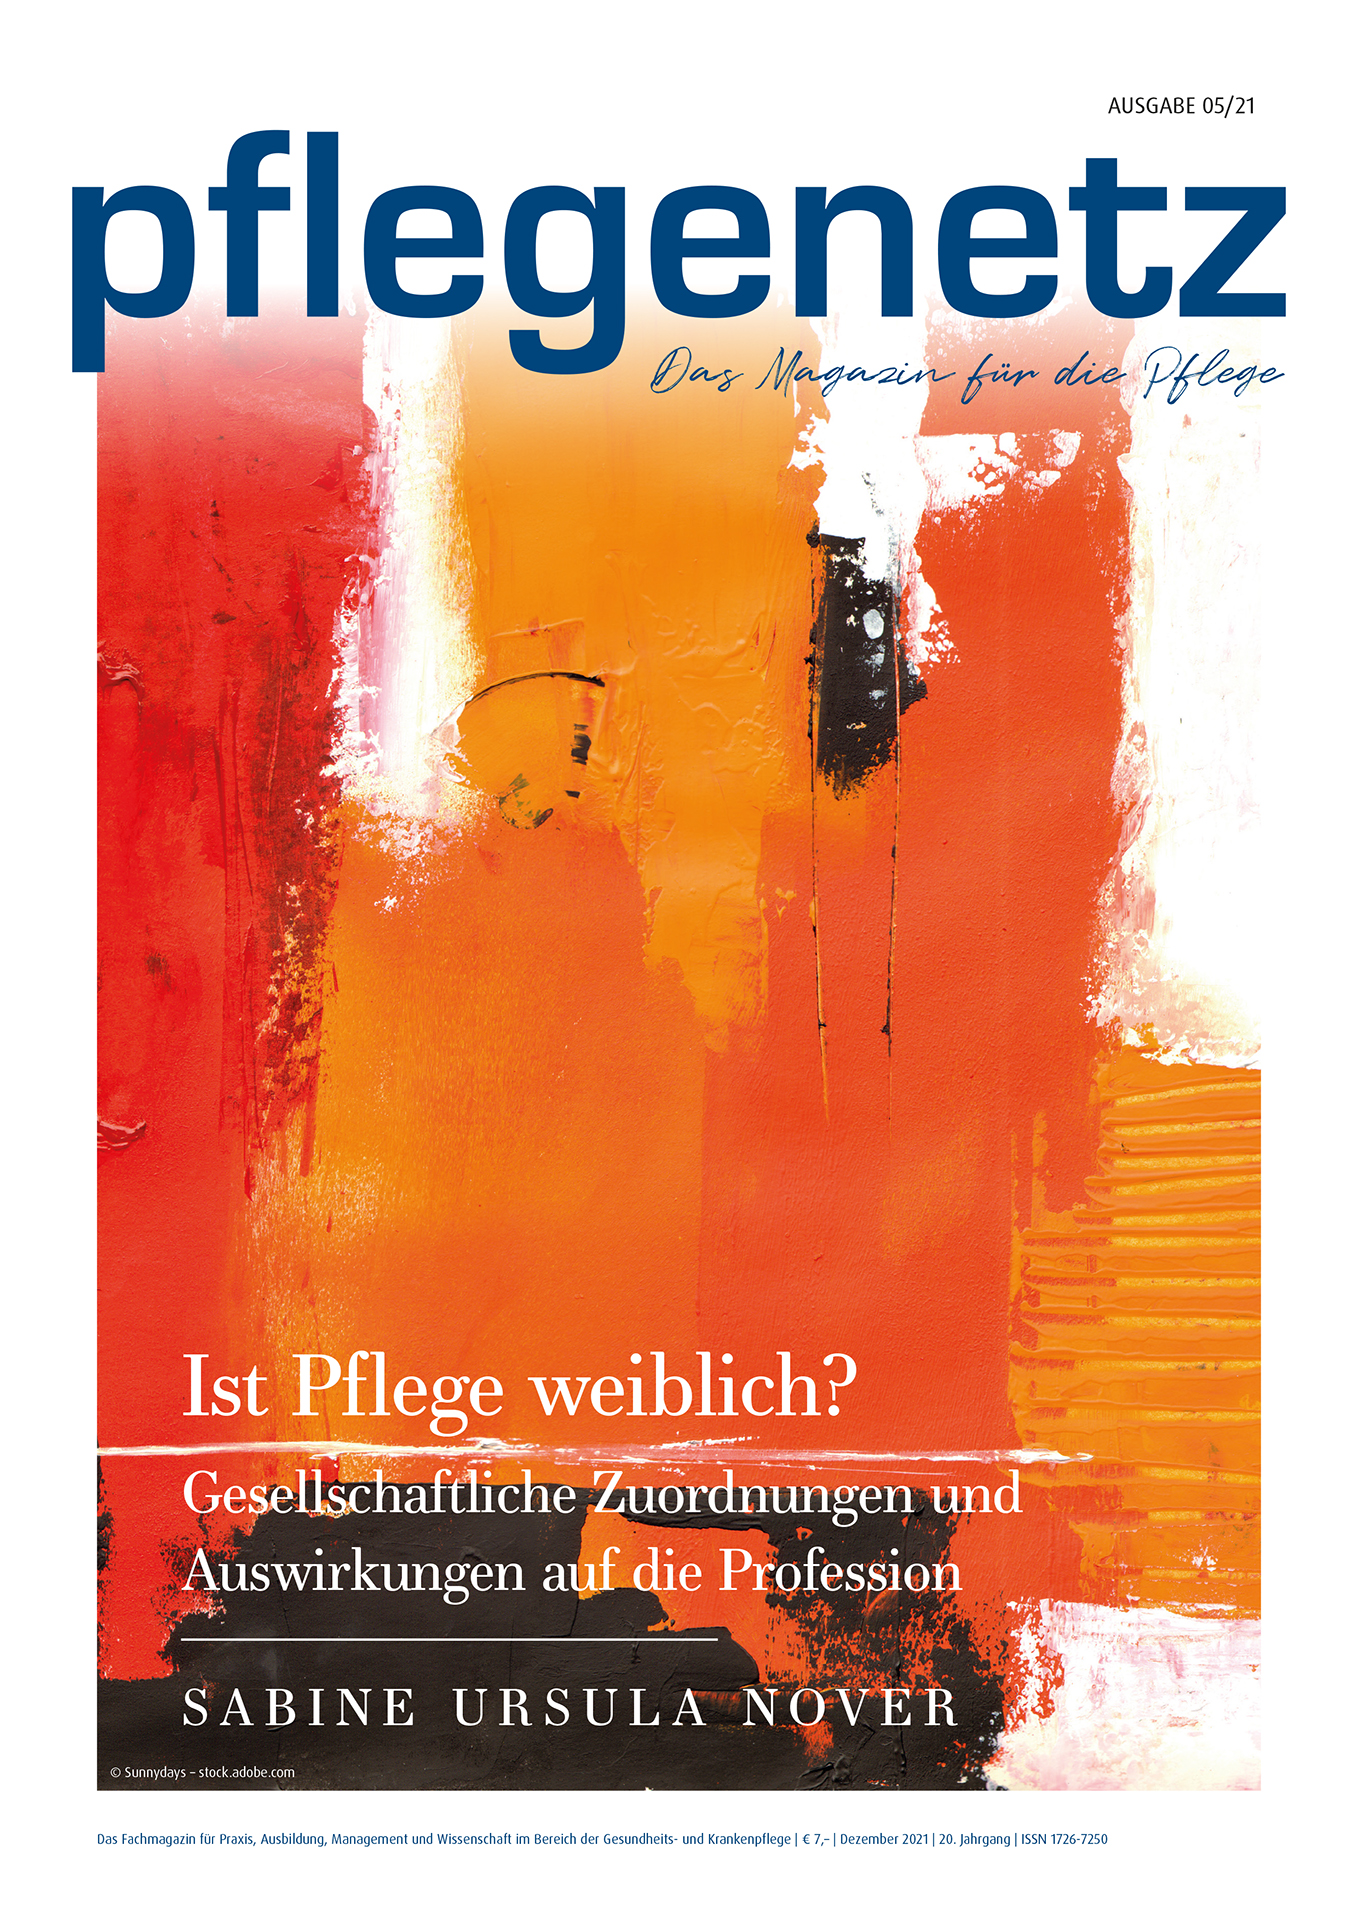 pflegenetz-magazin-21-05-neu